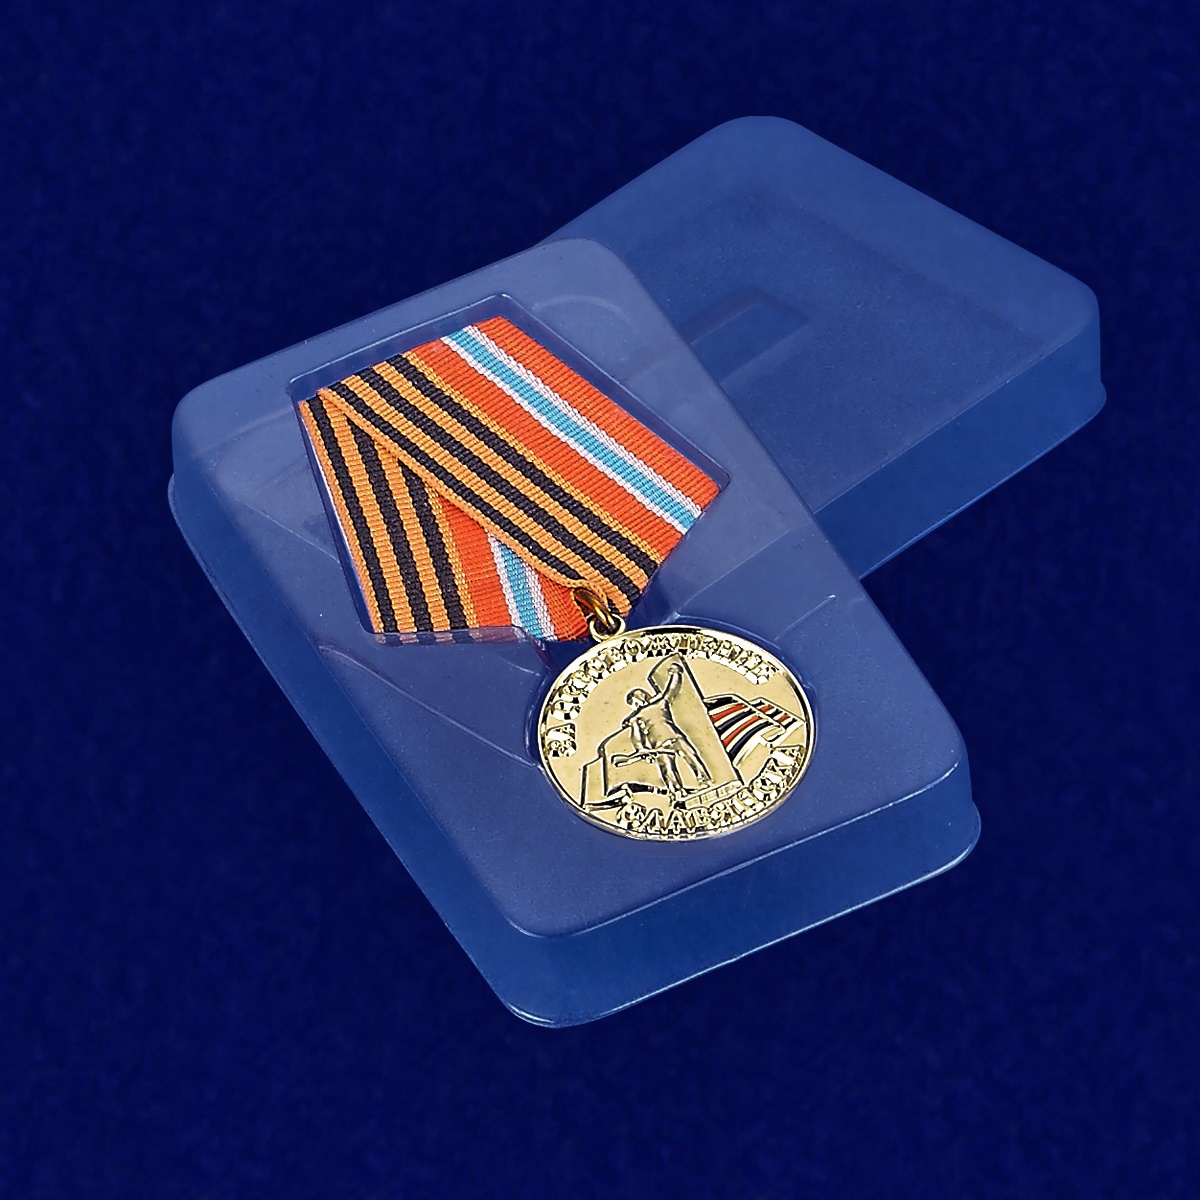 Медаль "За освобождение Славянска" 